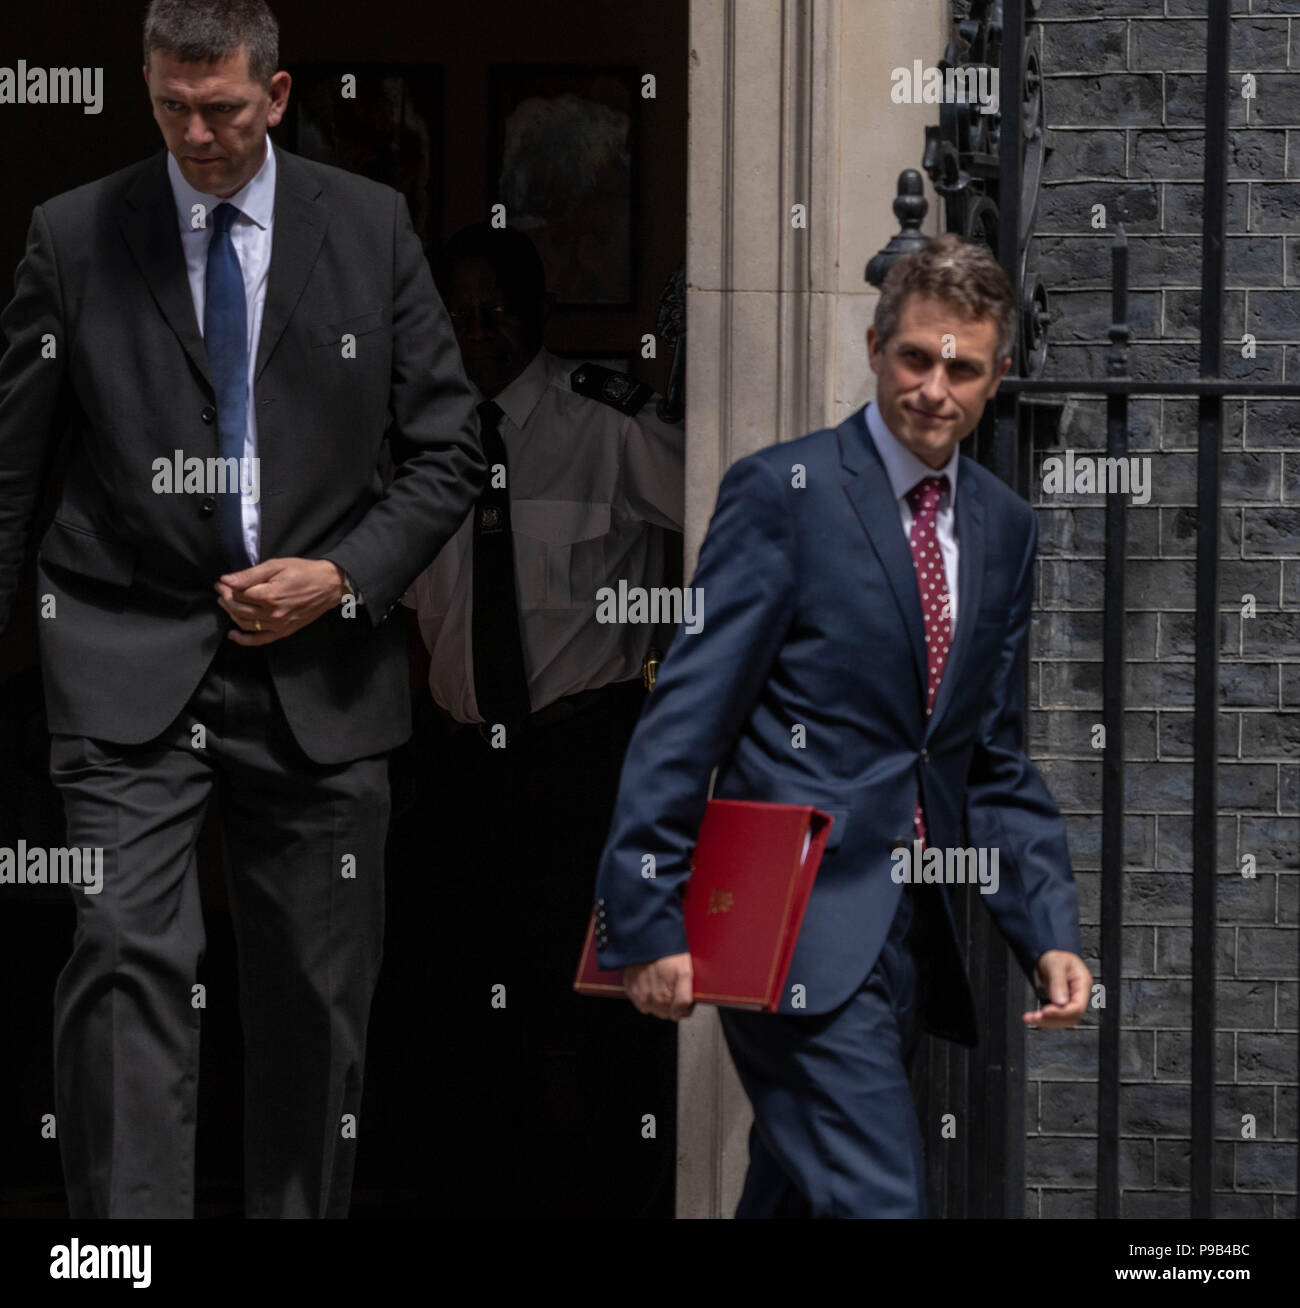 Londres, Royaume-Uni. 17 juillet 2018,Gavin Williamson CEPB MP PC, Secrétaire à la défense, , quitte la réunion du Cabinet de l'actuelle session du Parlement au 10 Downing Street, Londres, Royaume-Uni. Ian Davidson Crédit/Alamy Live News Banque D'Images